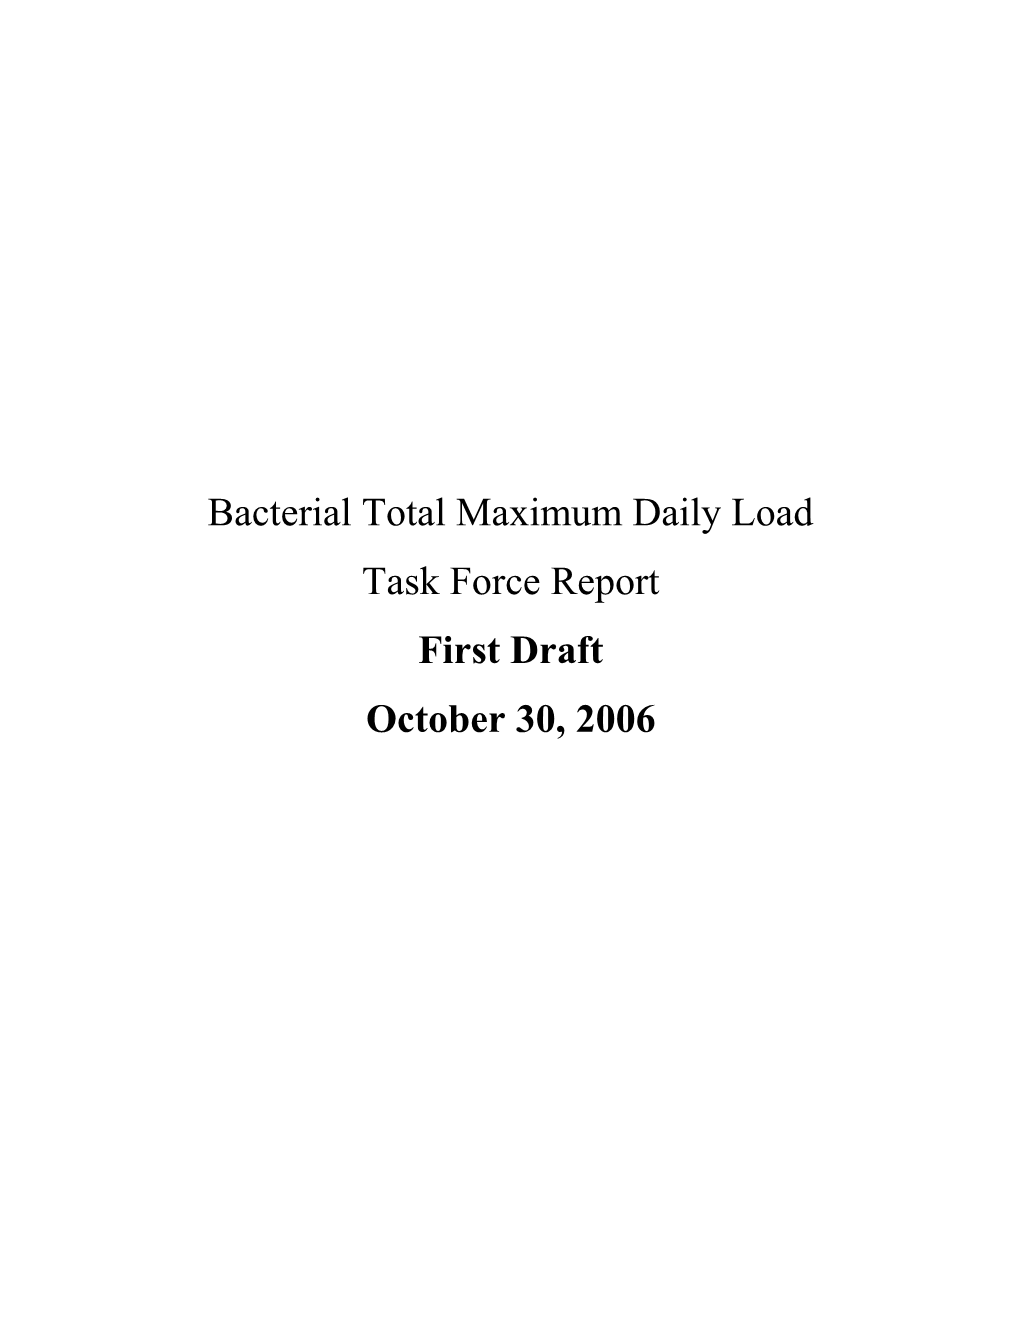 Bacterial Total Maximum Daily Load Task Force Report